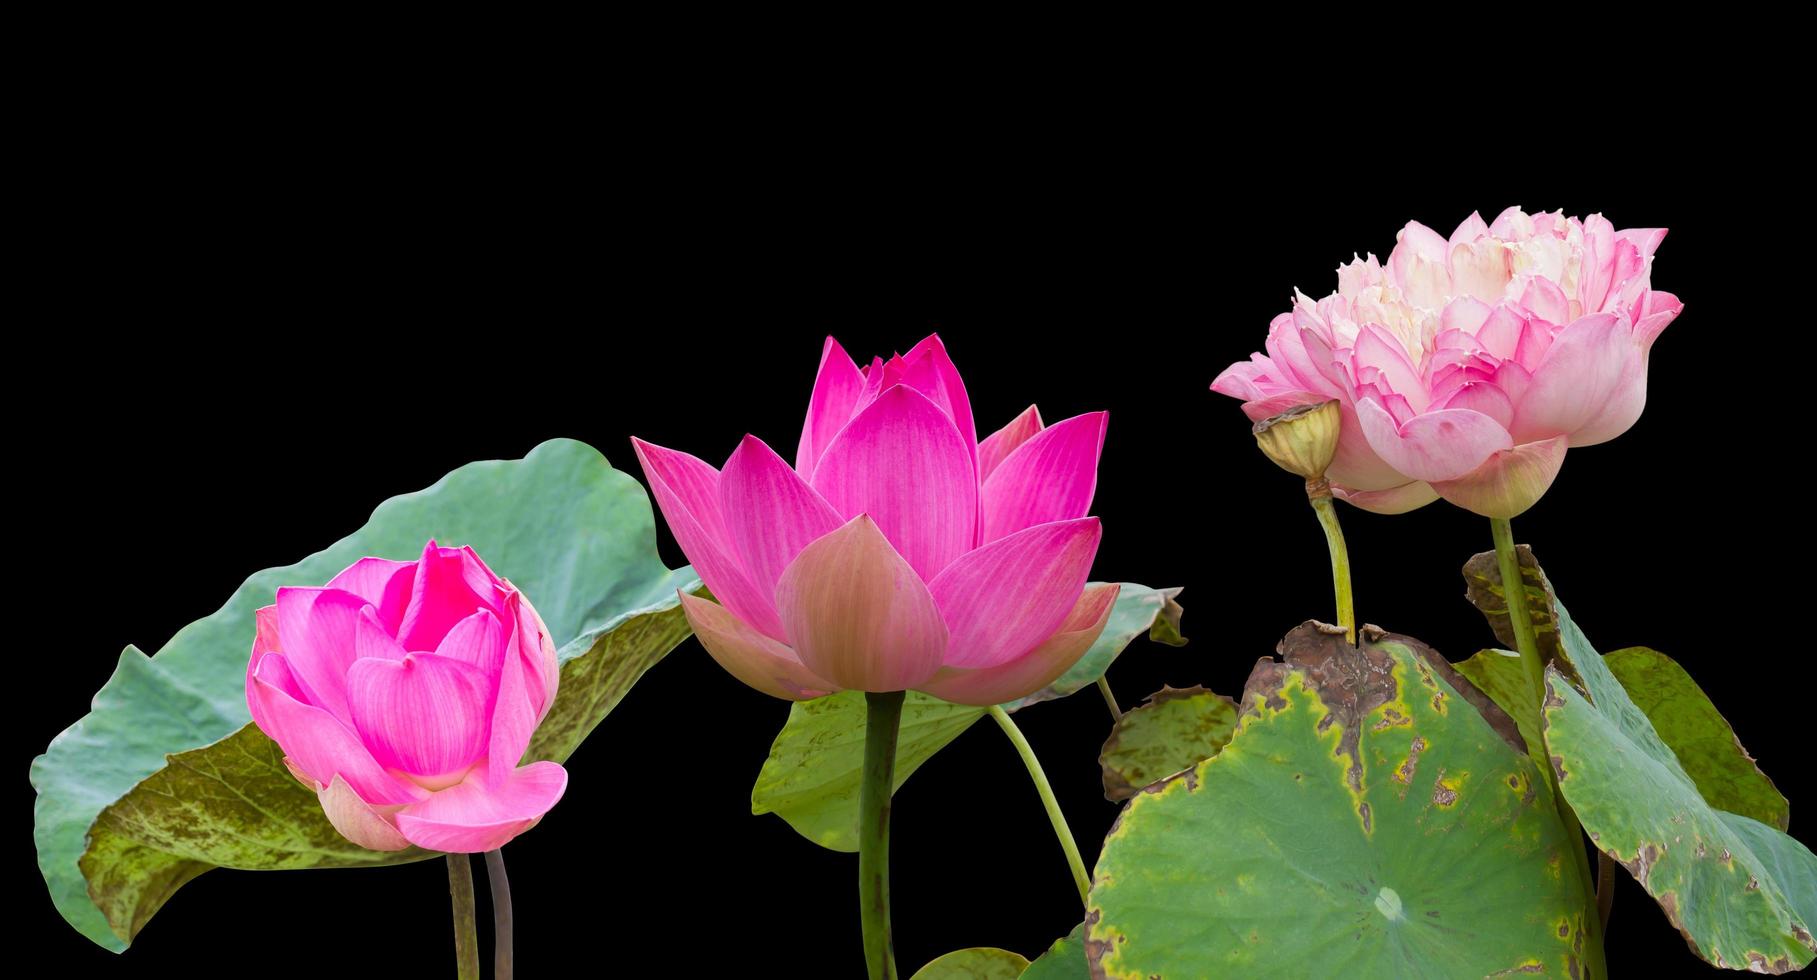 trois fleurs de lotus roses se fanent. photo